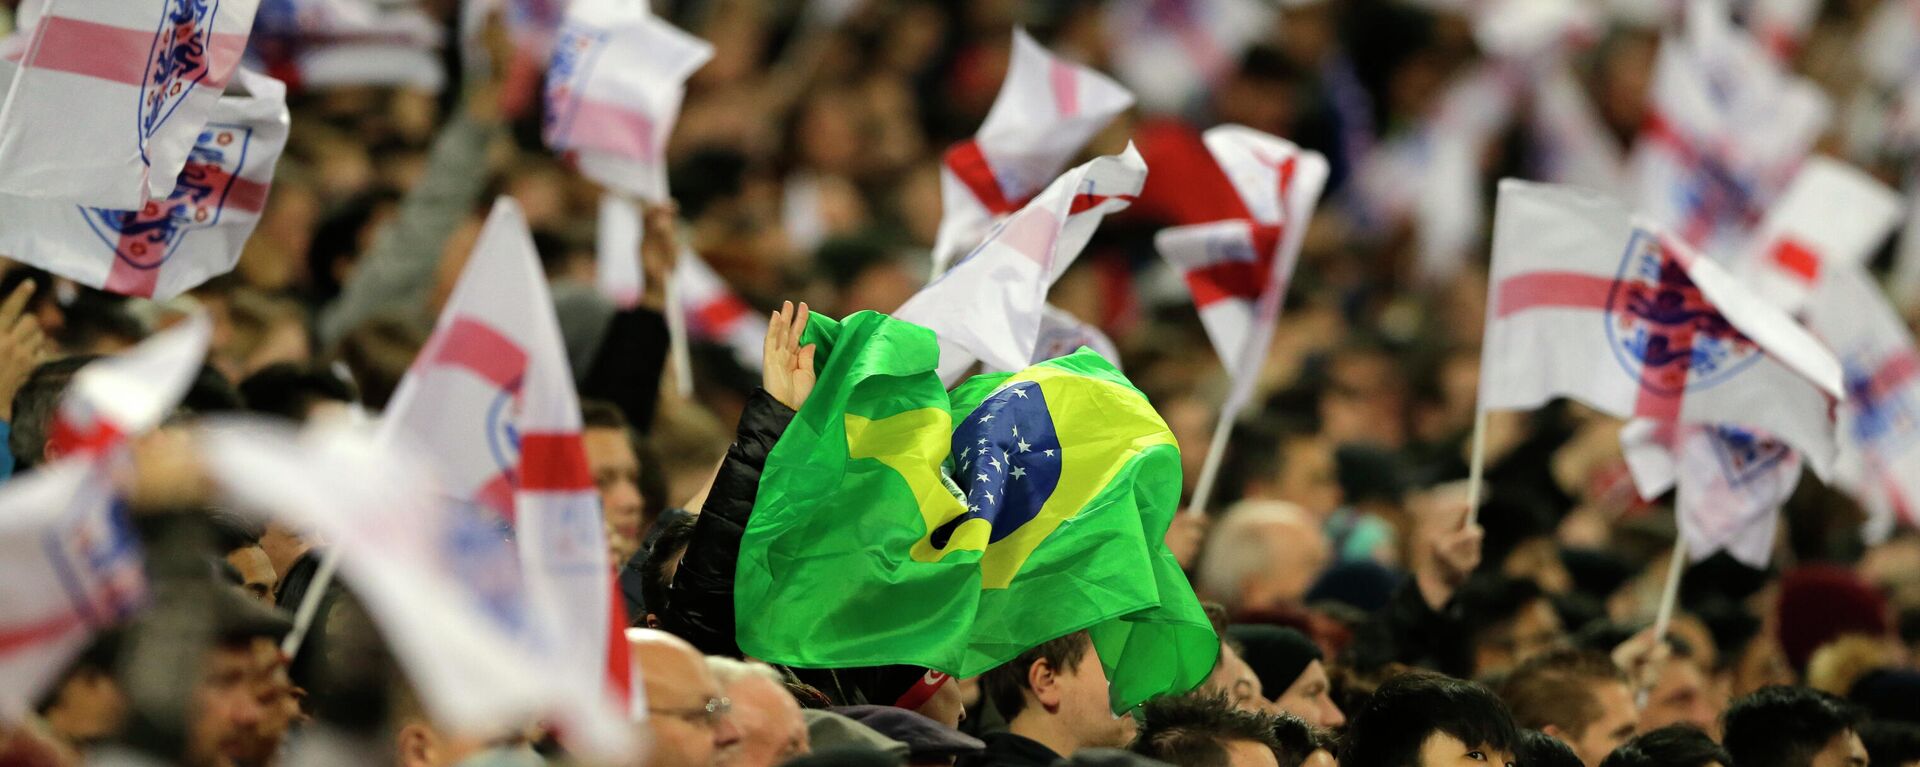 Uma única bandeira brasileira é vista entre as bandeiras da Inglaterra durante o amistoso internacional entre a Inglaterra e o Brasil no estádio de Wembley em Londres, Reino Unido (foto de arquivo) - Sputnik Brasil, 1920, 18.11.2021